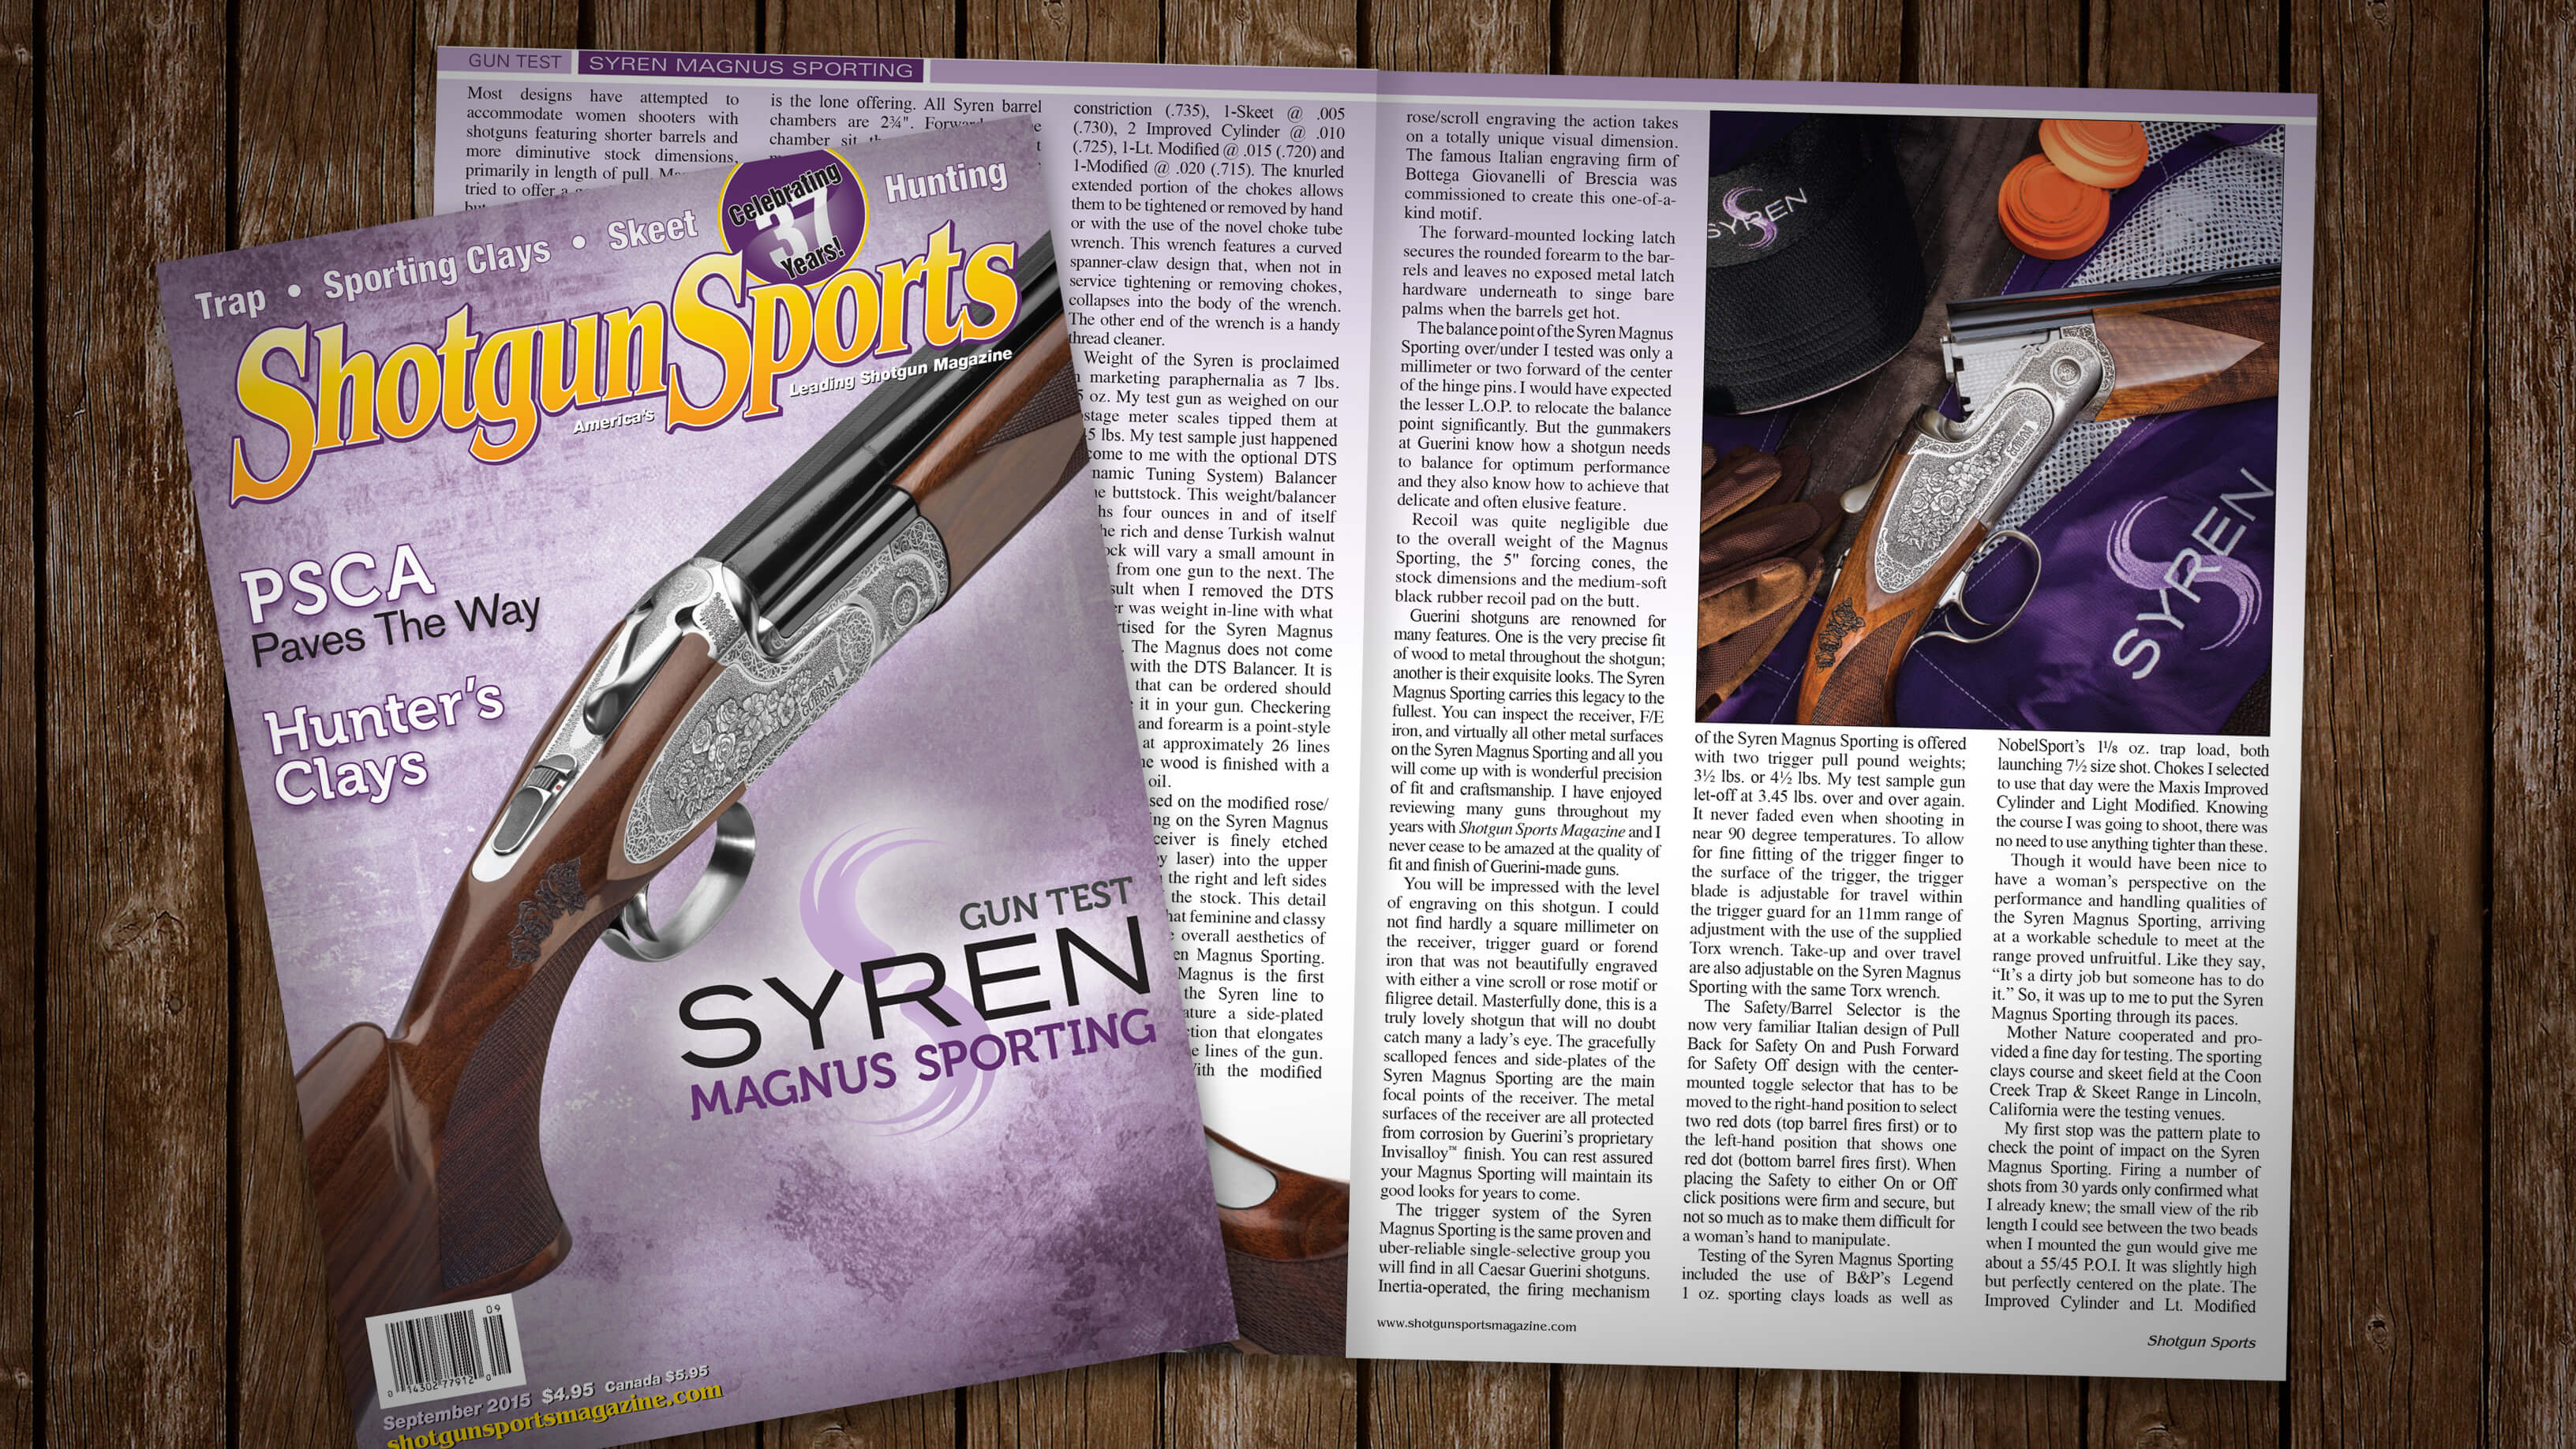 [Shotgun Sports Magazine: 09.15] Gun Test: Syren Magnus Sporting